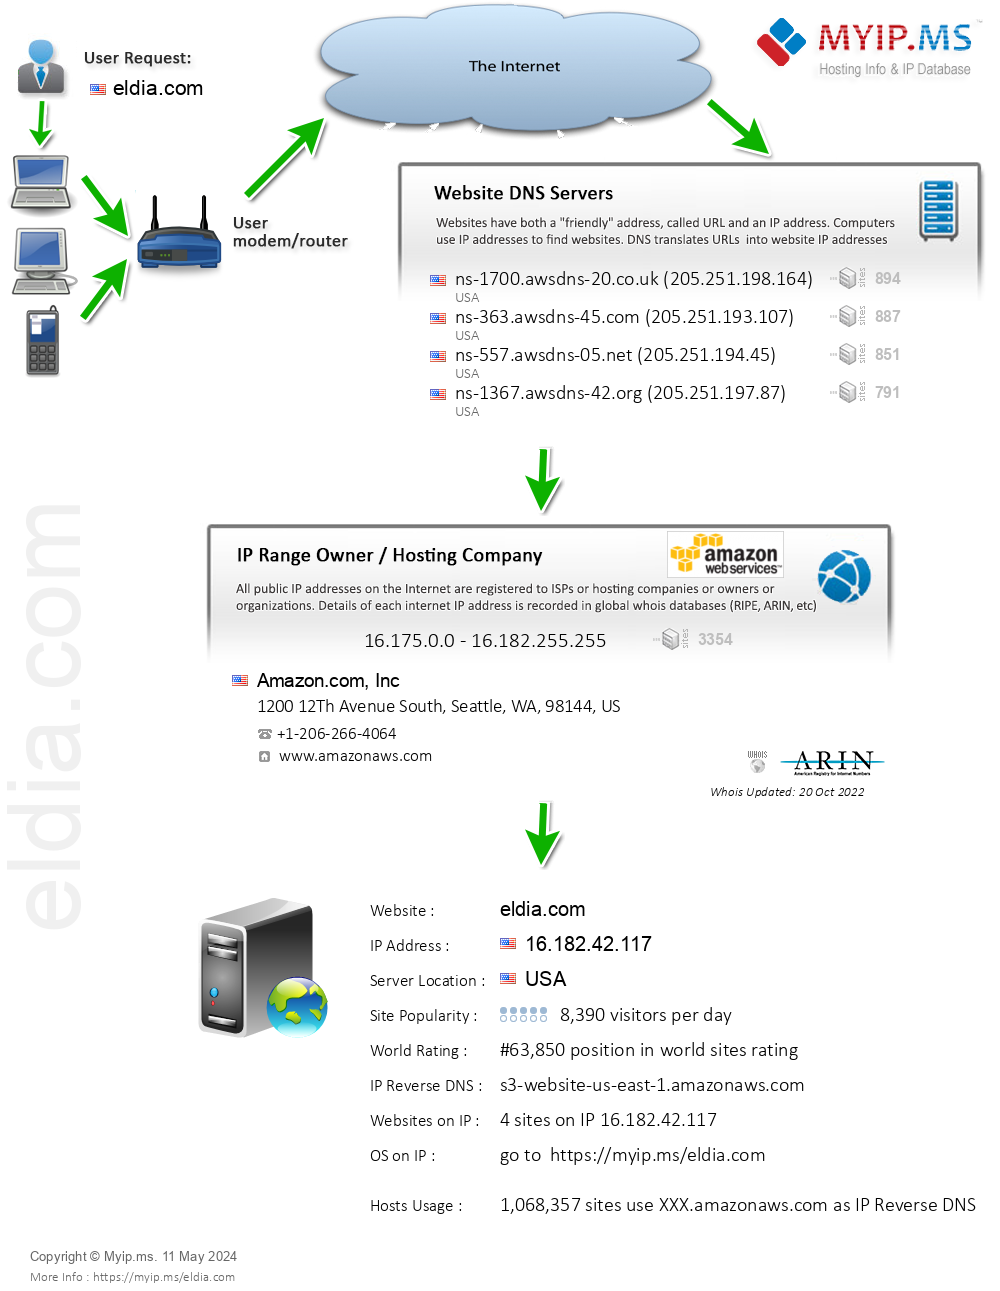 Eldia.com - Website Hosting Visual IP Diagram